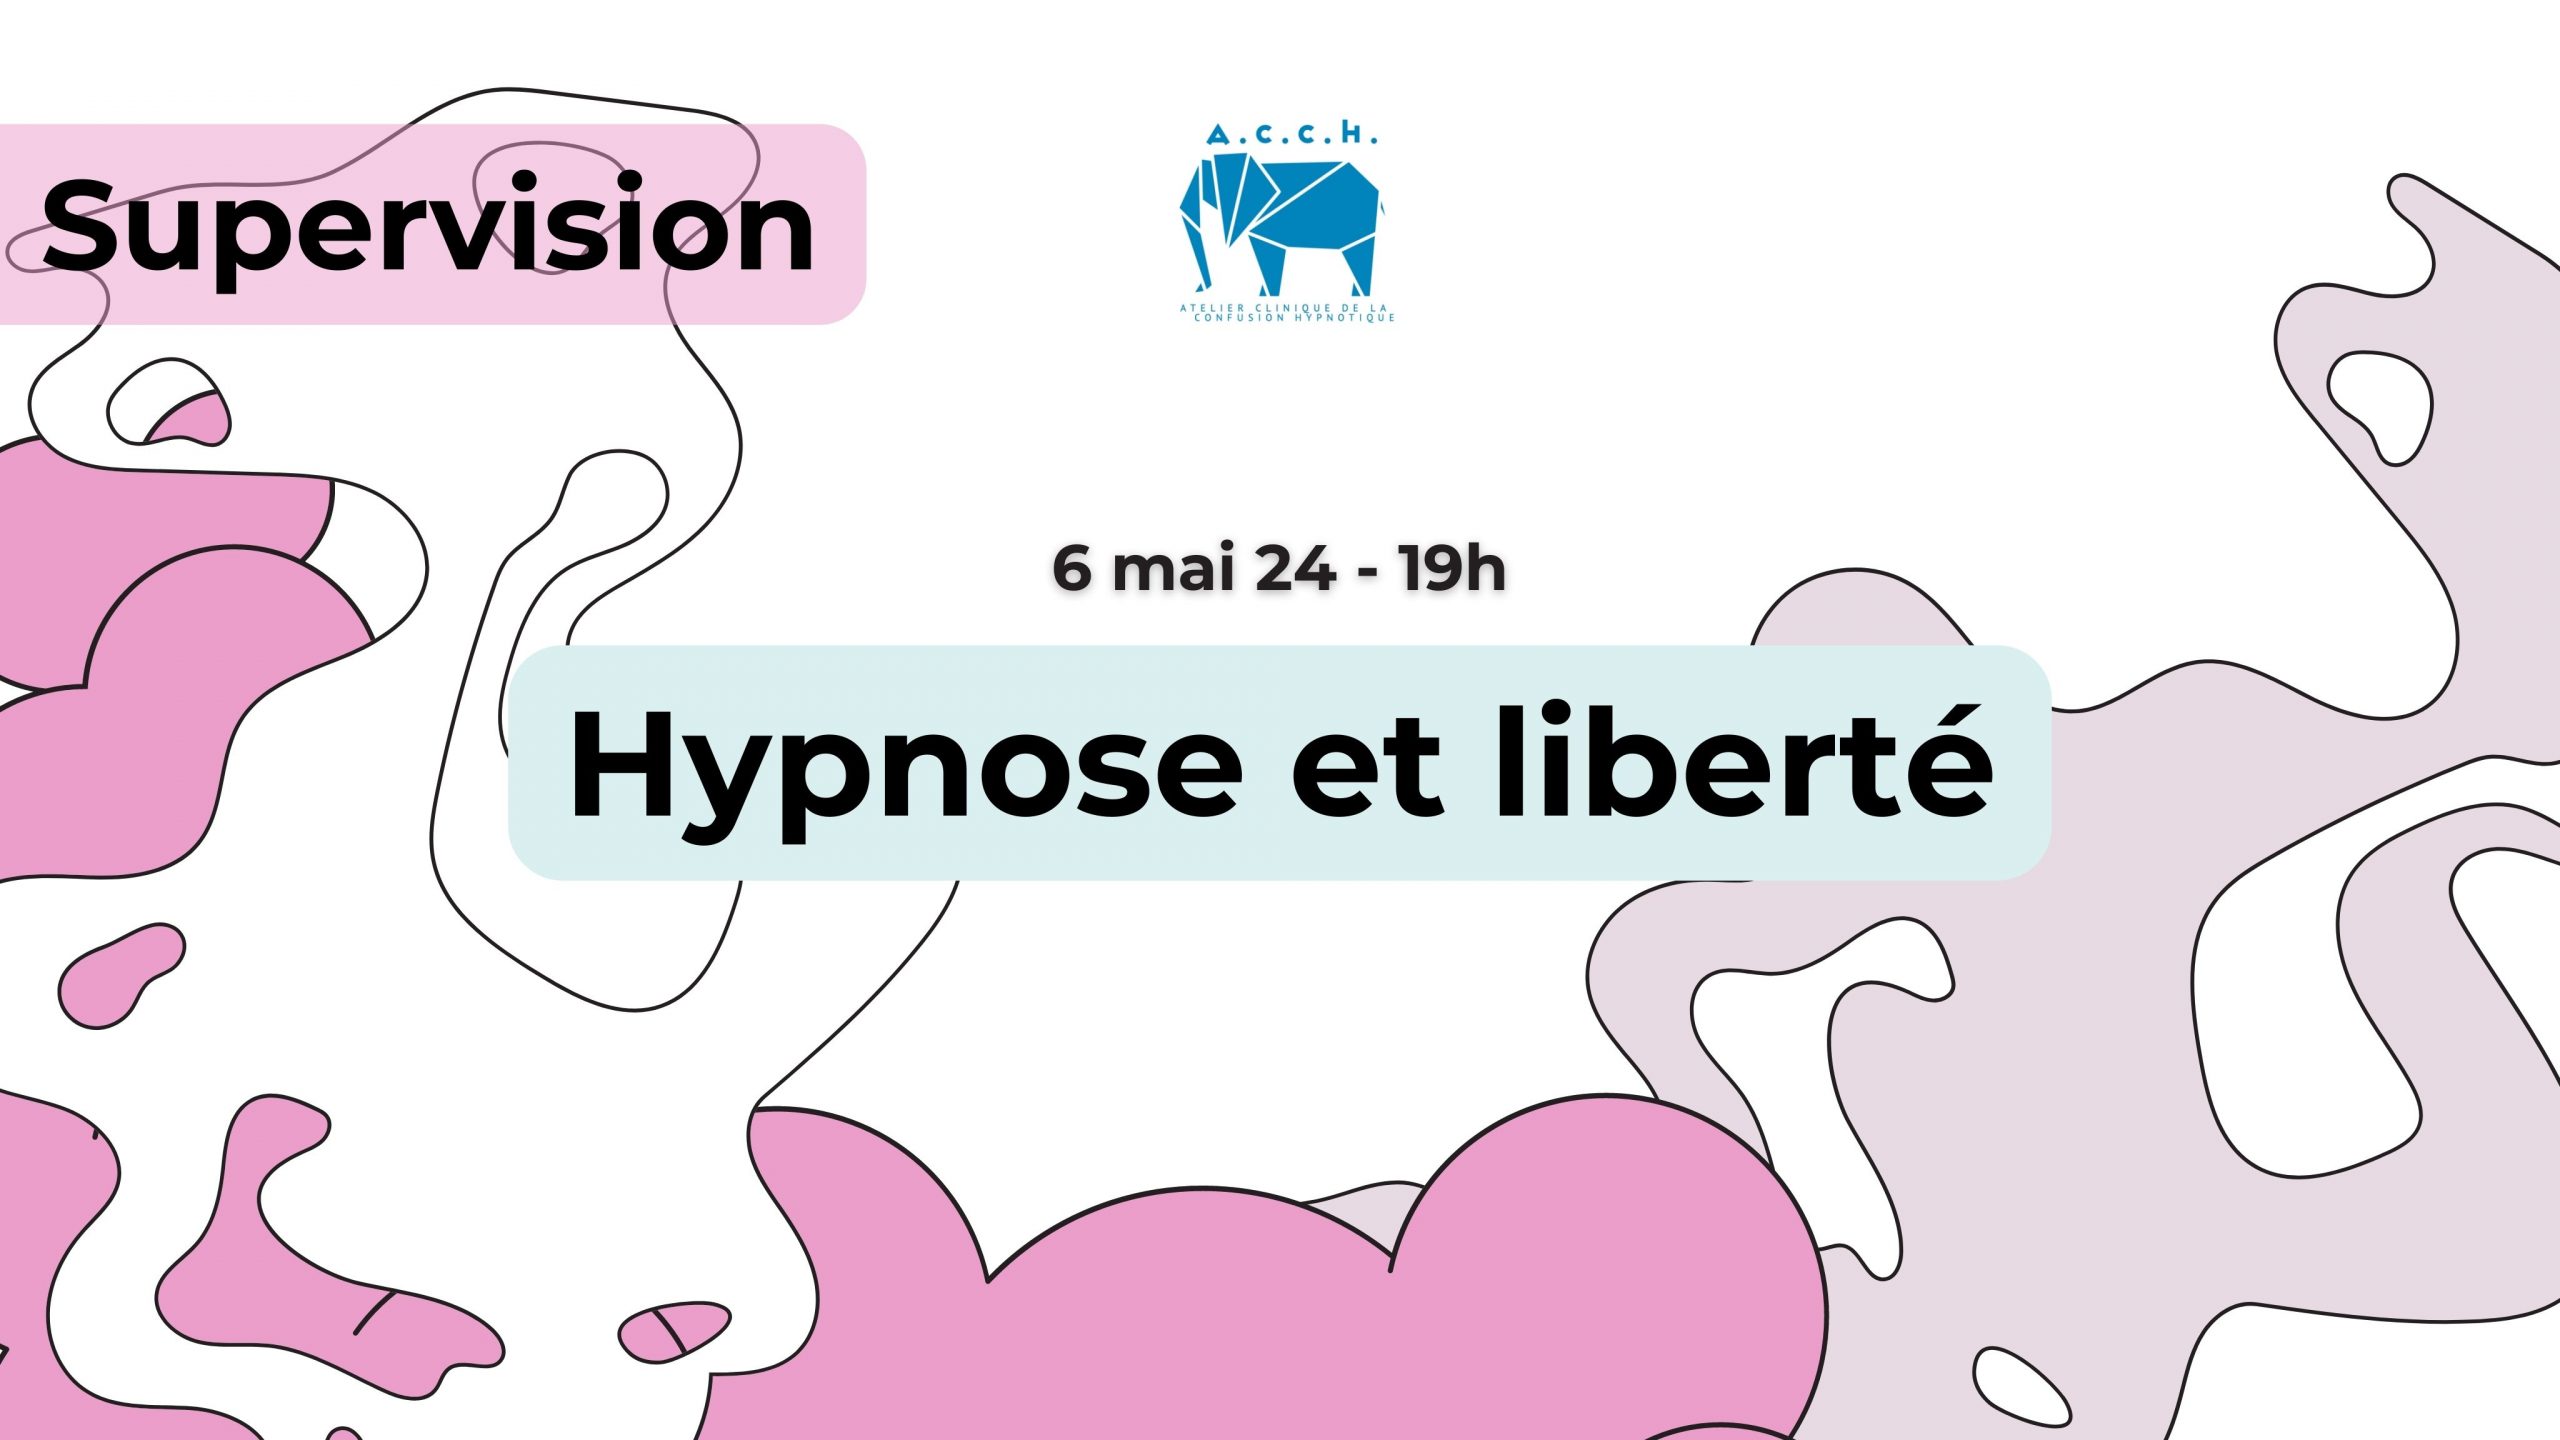 Supervision : Hypnose et liberté